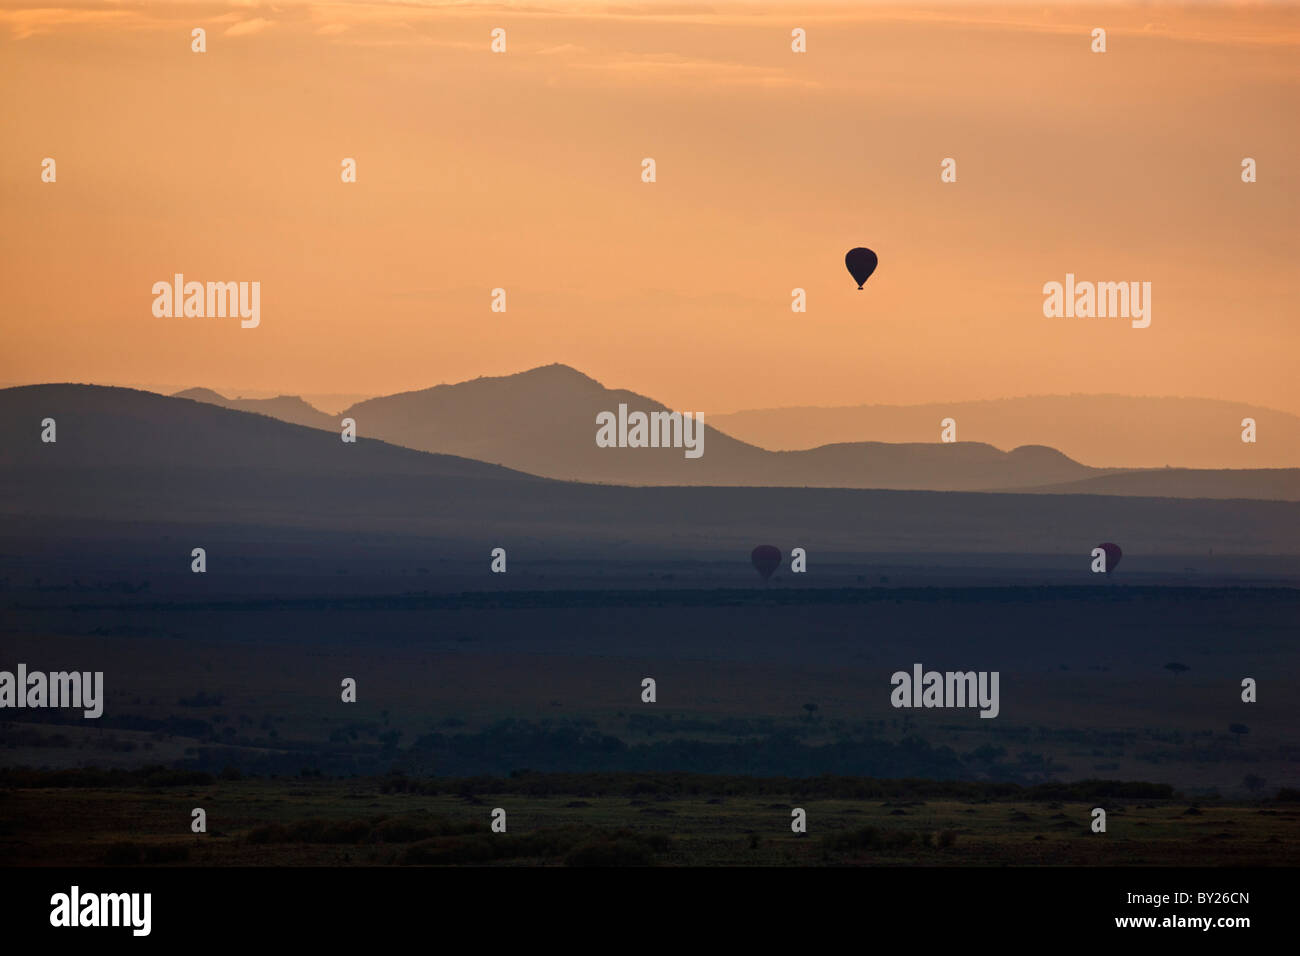 Dawn breaks over Masai-Mara as hot air balloons drift over the plains. Stock Photo